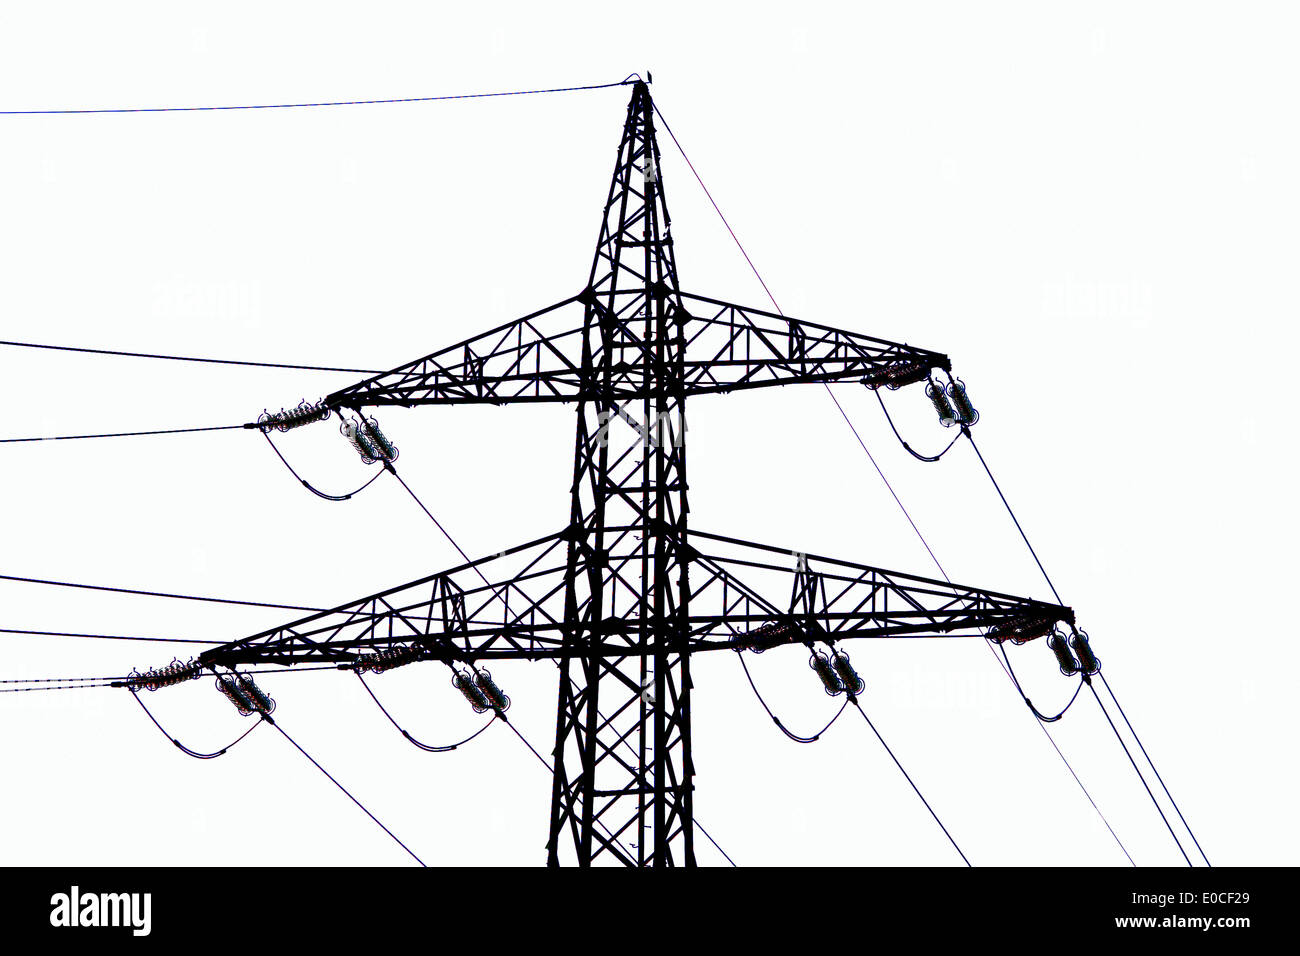 Of the masts of a power supply line before blue sky. High-tension management, Der Masten einer Stromleitung vor blauem Himmel. H Stock Photo